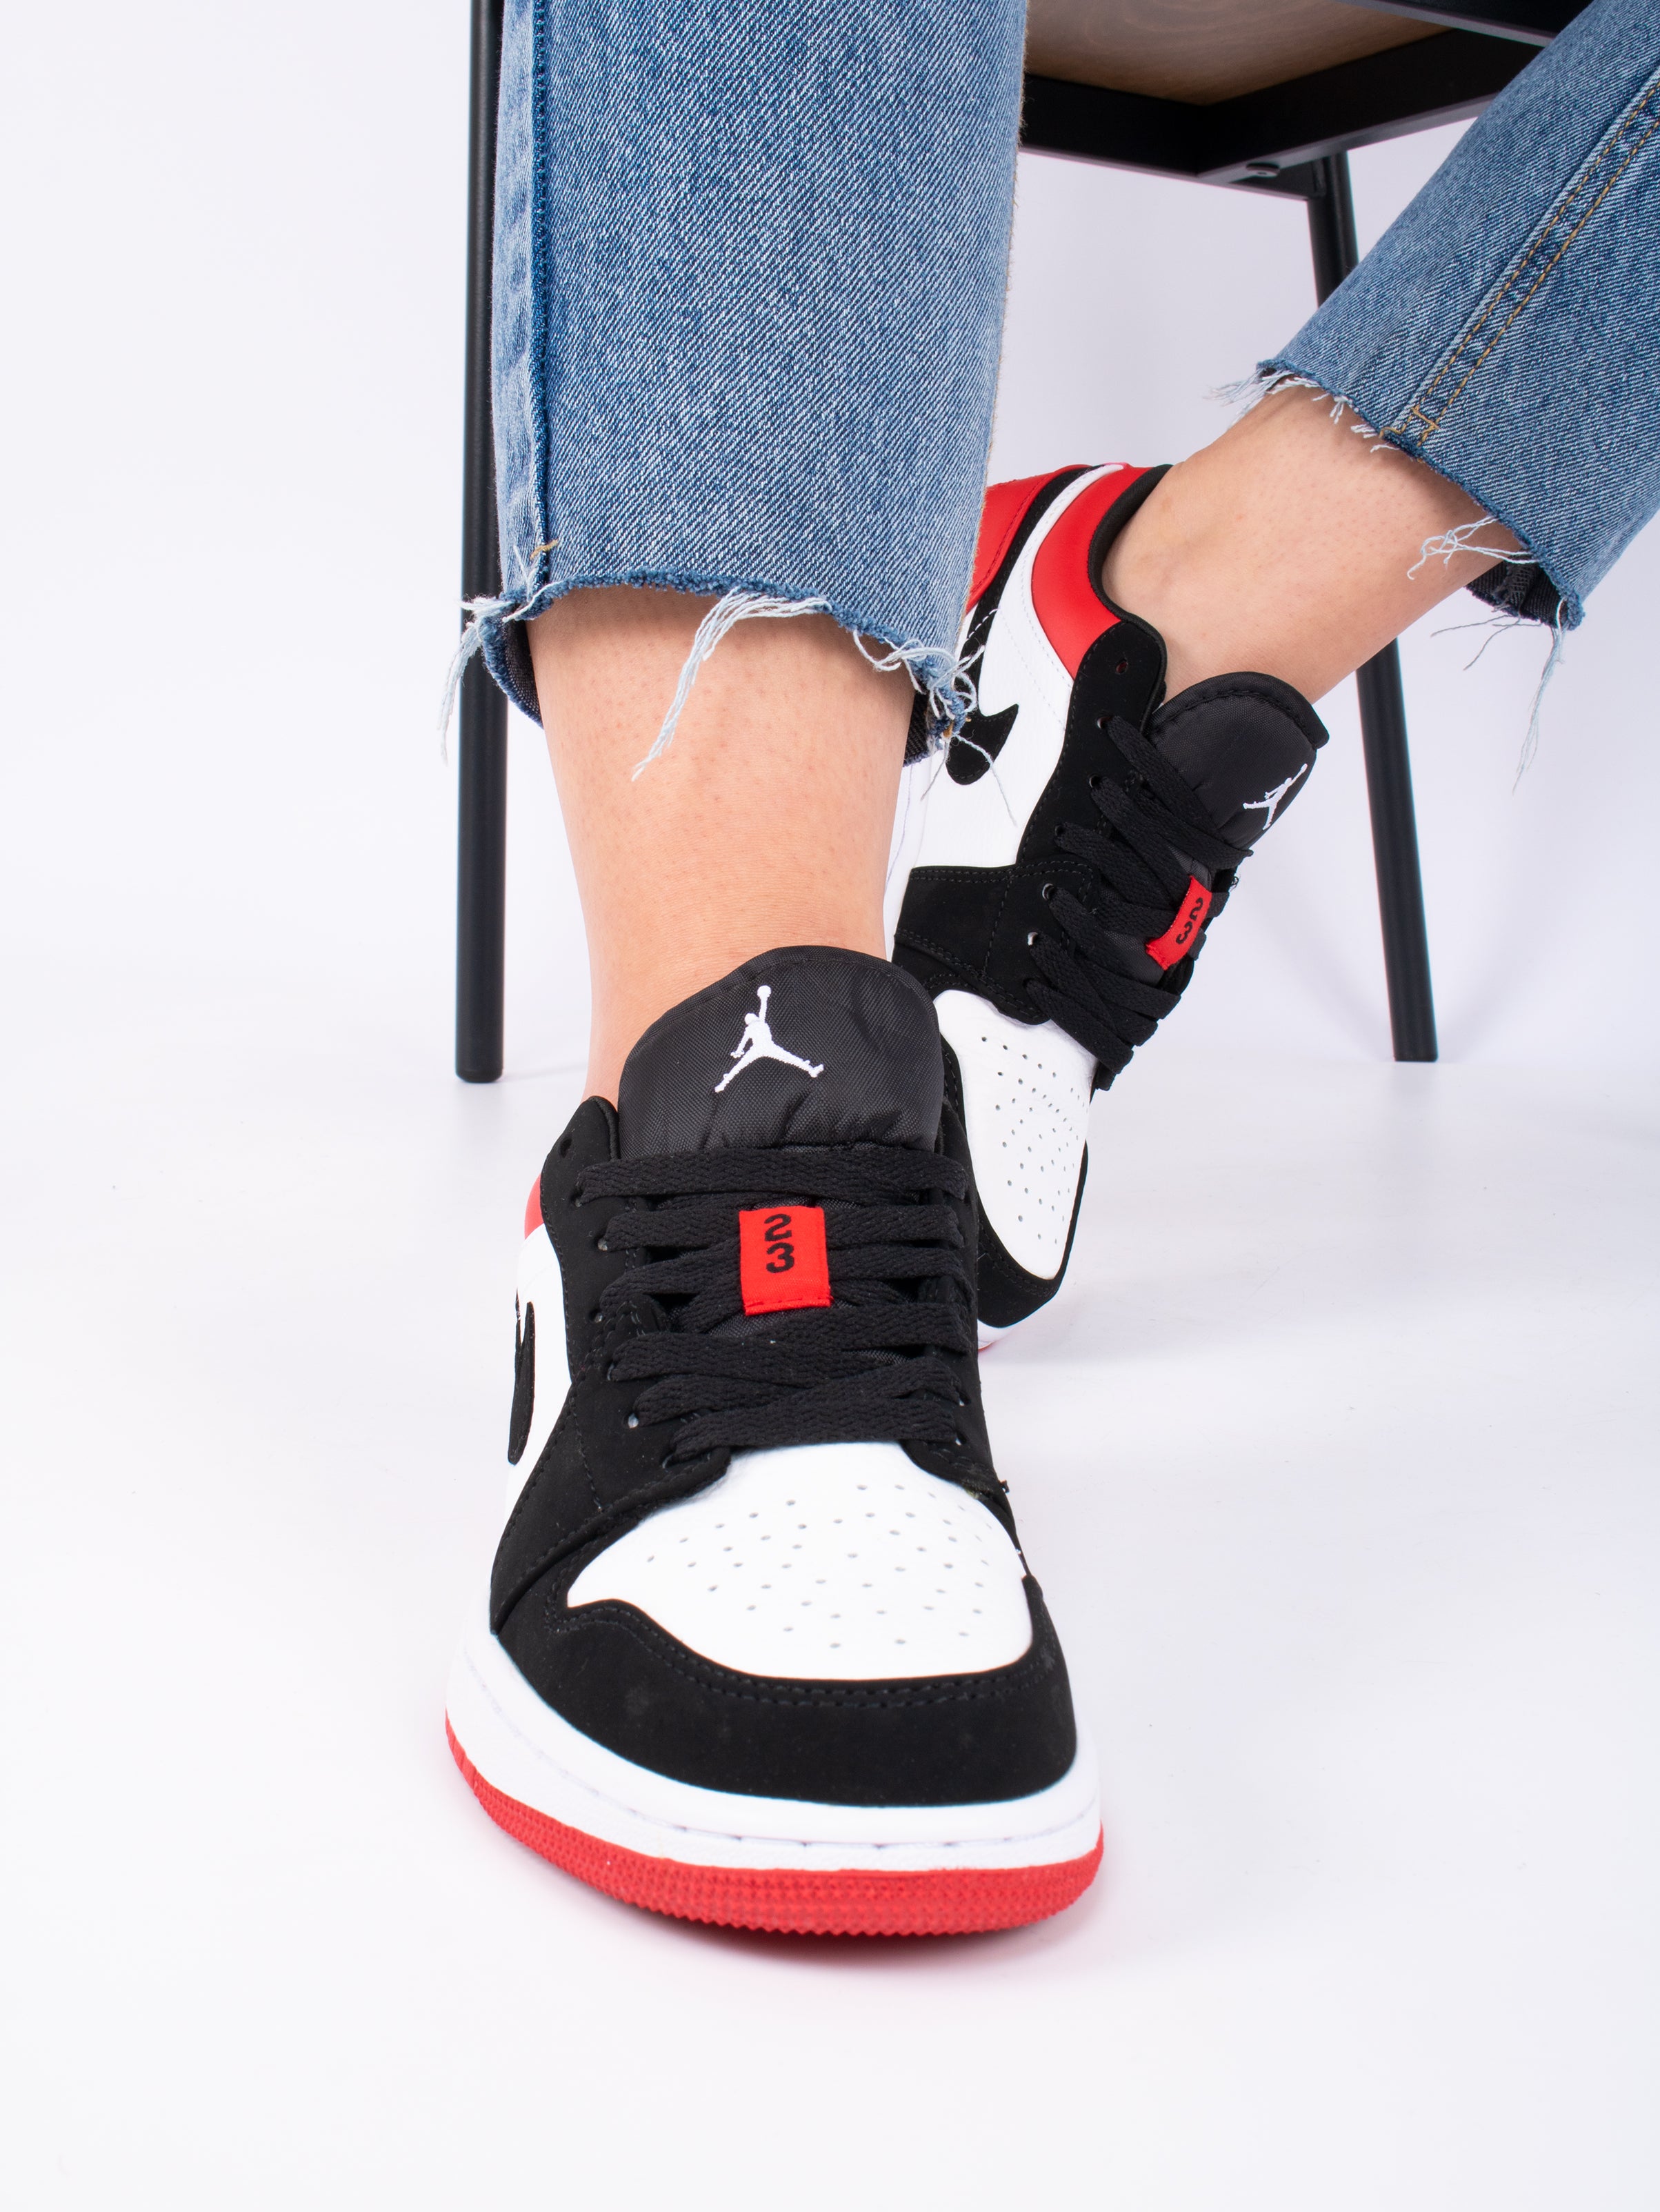 Nike Air Jordan 1 Low Black Toe Basketball